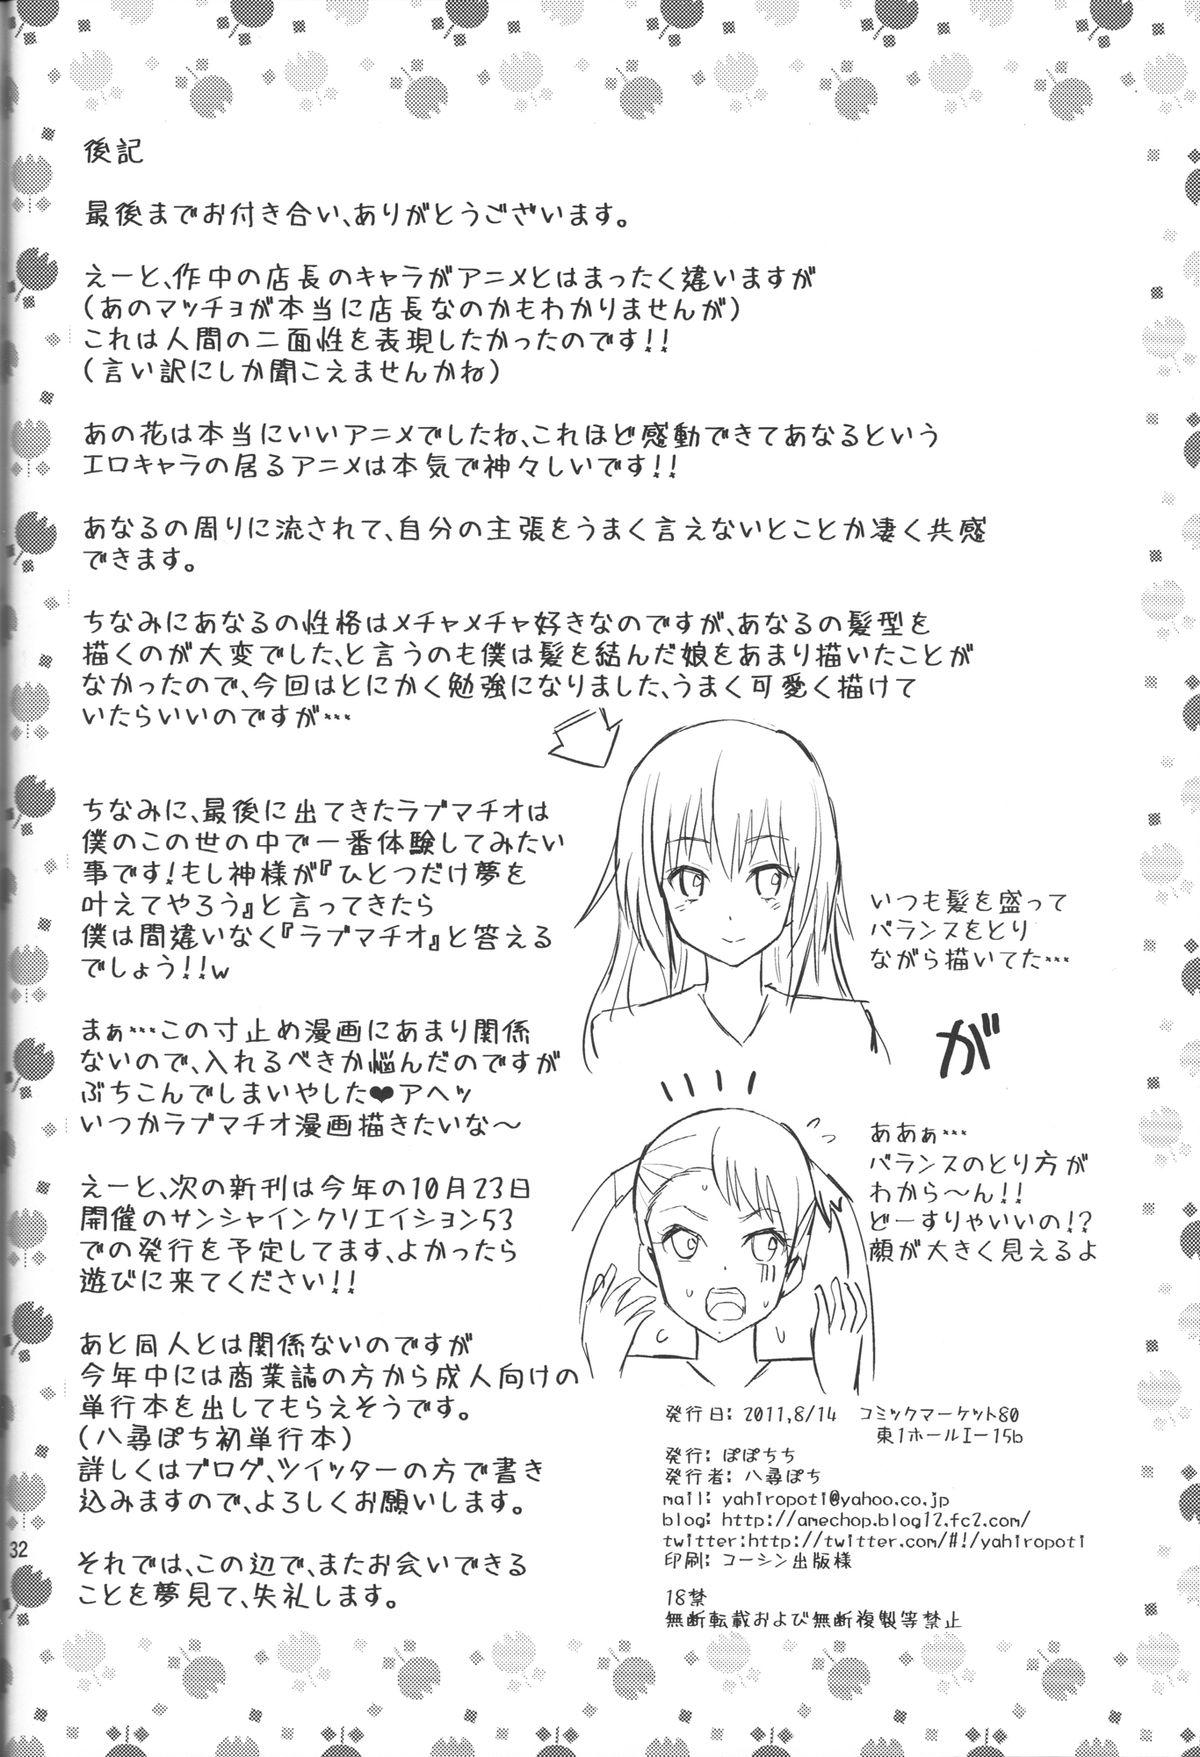 Couch Ano Anaru no Sundome Manga o Bokutachi wa Mada Shiranai. - Ano hi mita hana no namae wo bokutachi wa mada shiranai Bubble - Page 31